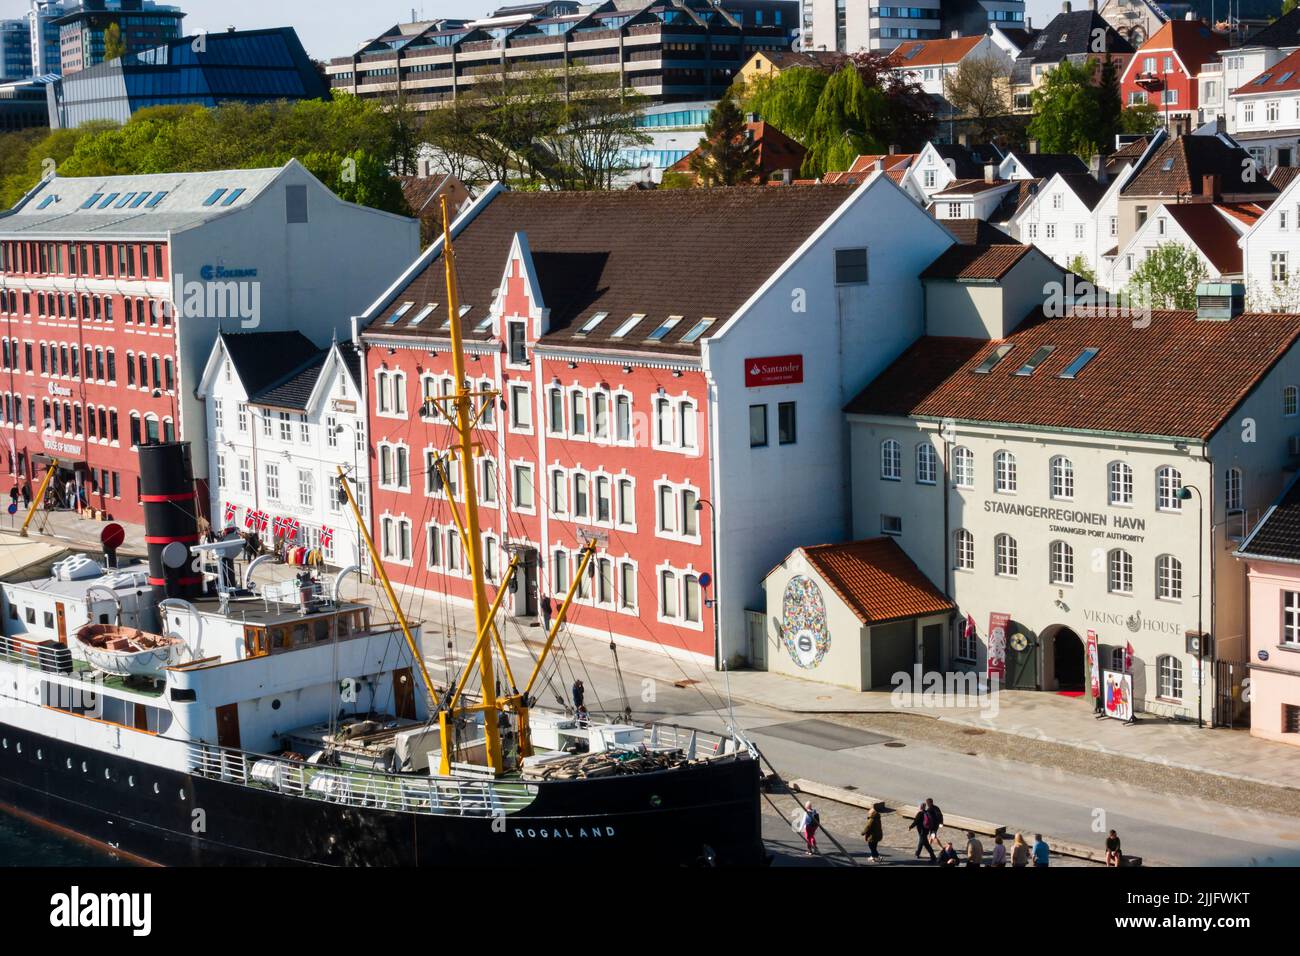 Un navire de transport de passagers à vapeur historique, MS Rogaland, a été amarré à côté du bâtiment de l'Autorité portuaire de Stavangerregien Havn, à Stavanger, en Norvège Banque D'Images